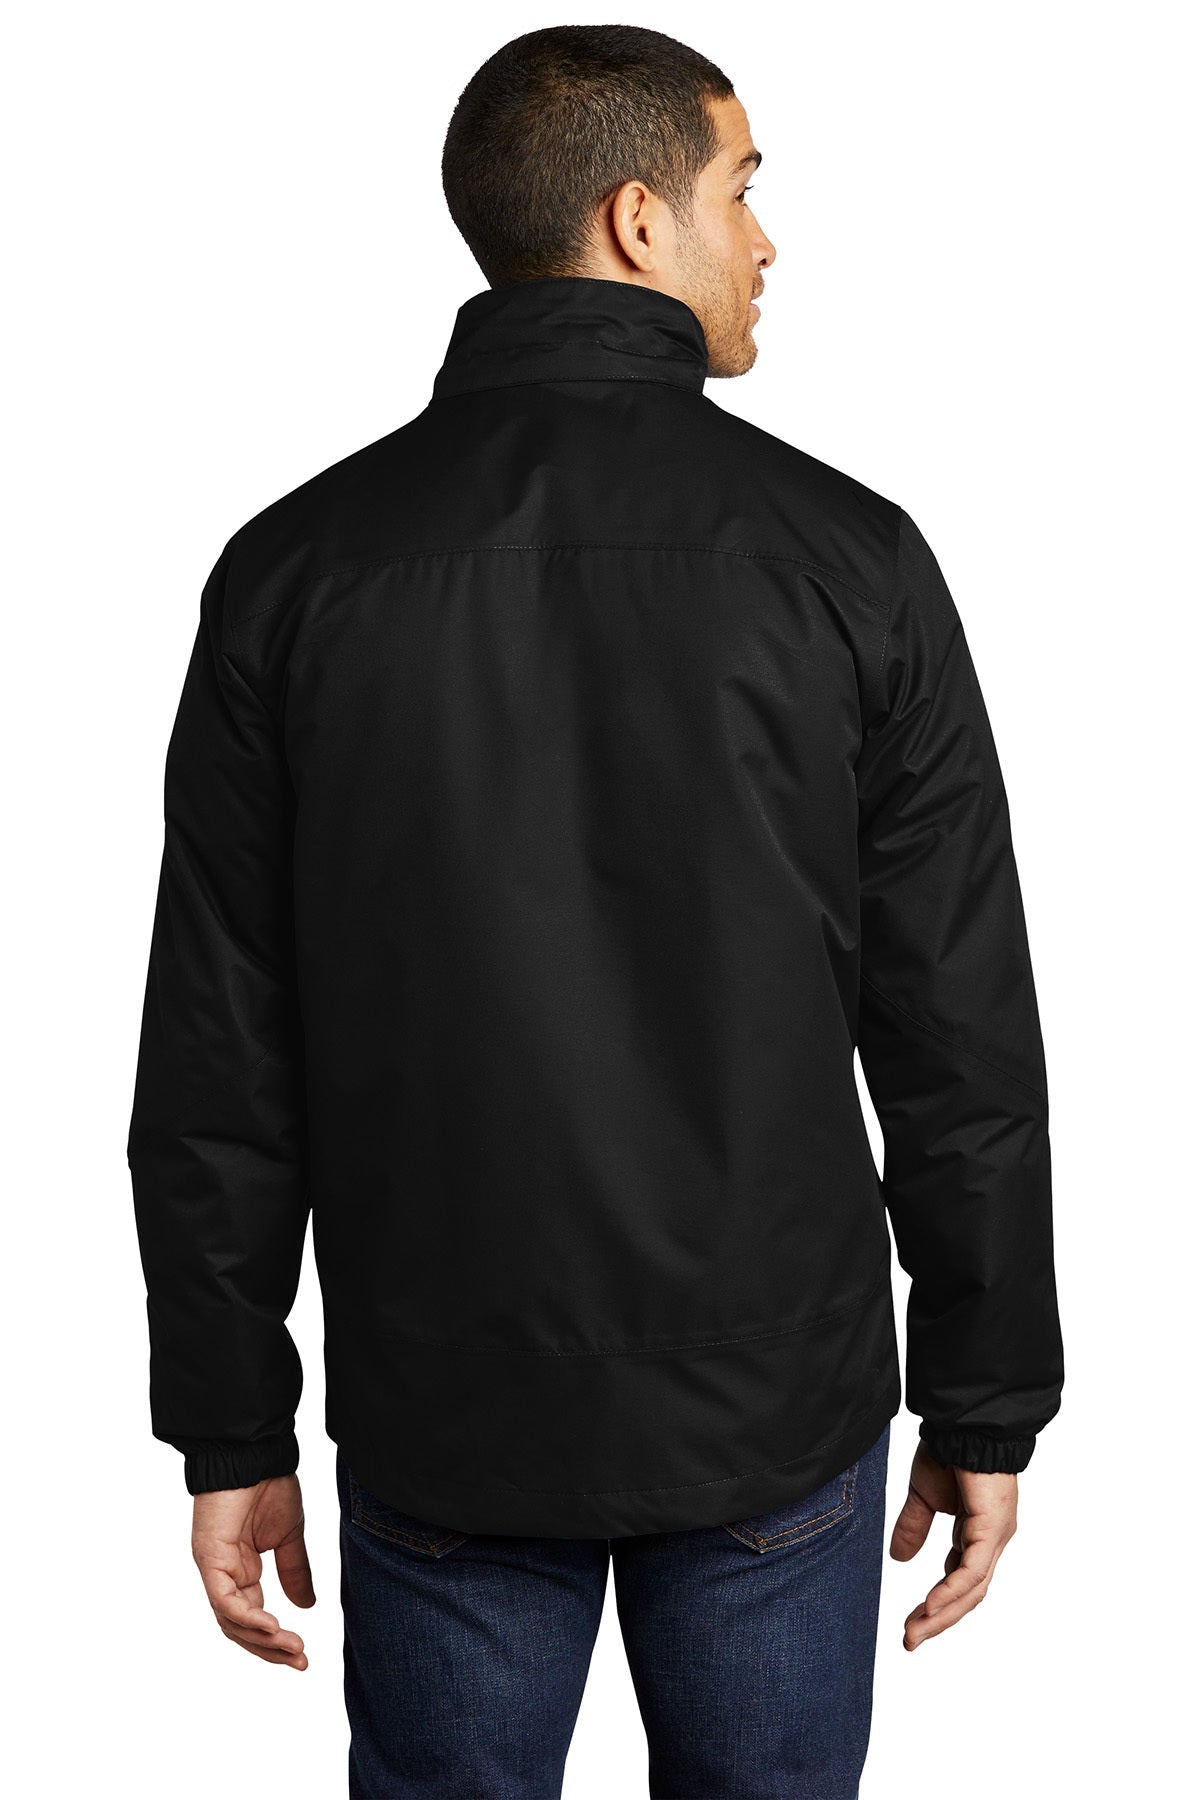 port authority_j332 _black/ black_company_logo_jackets